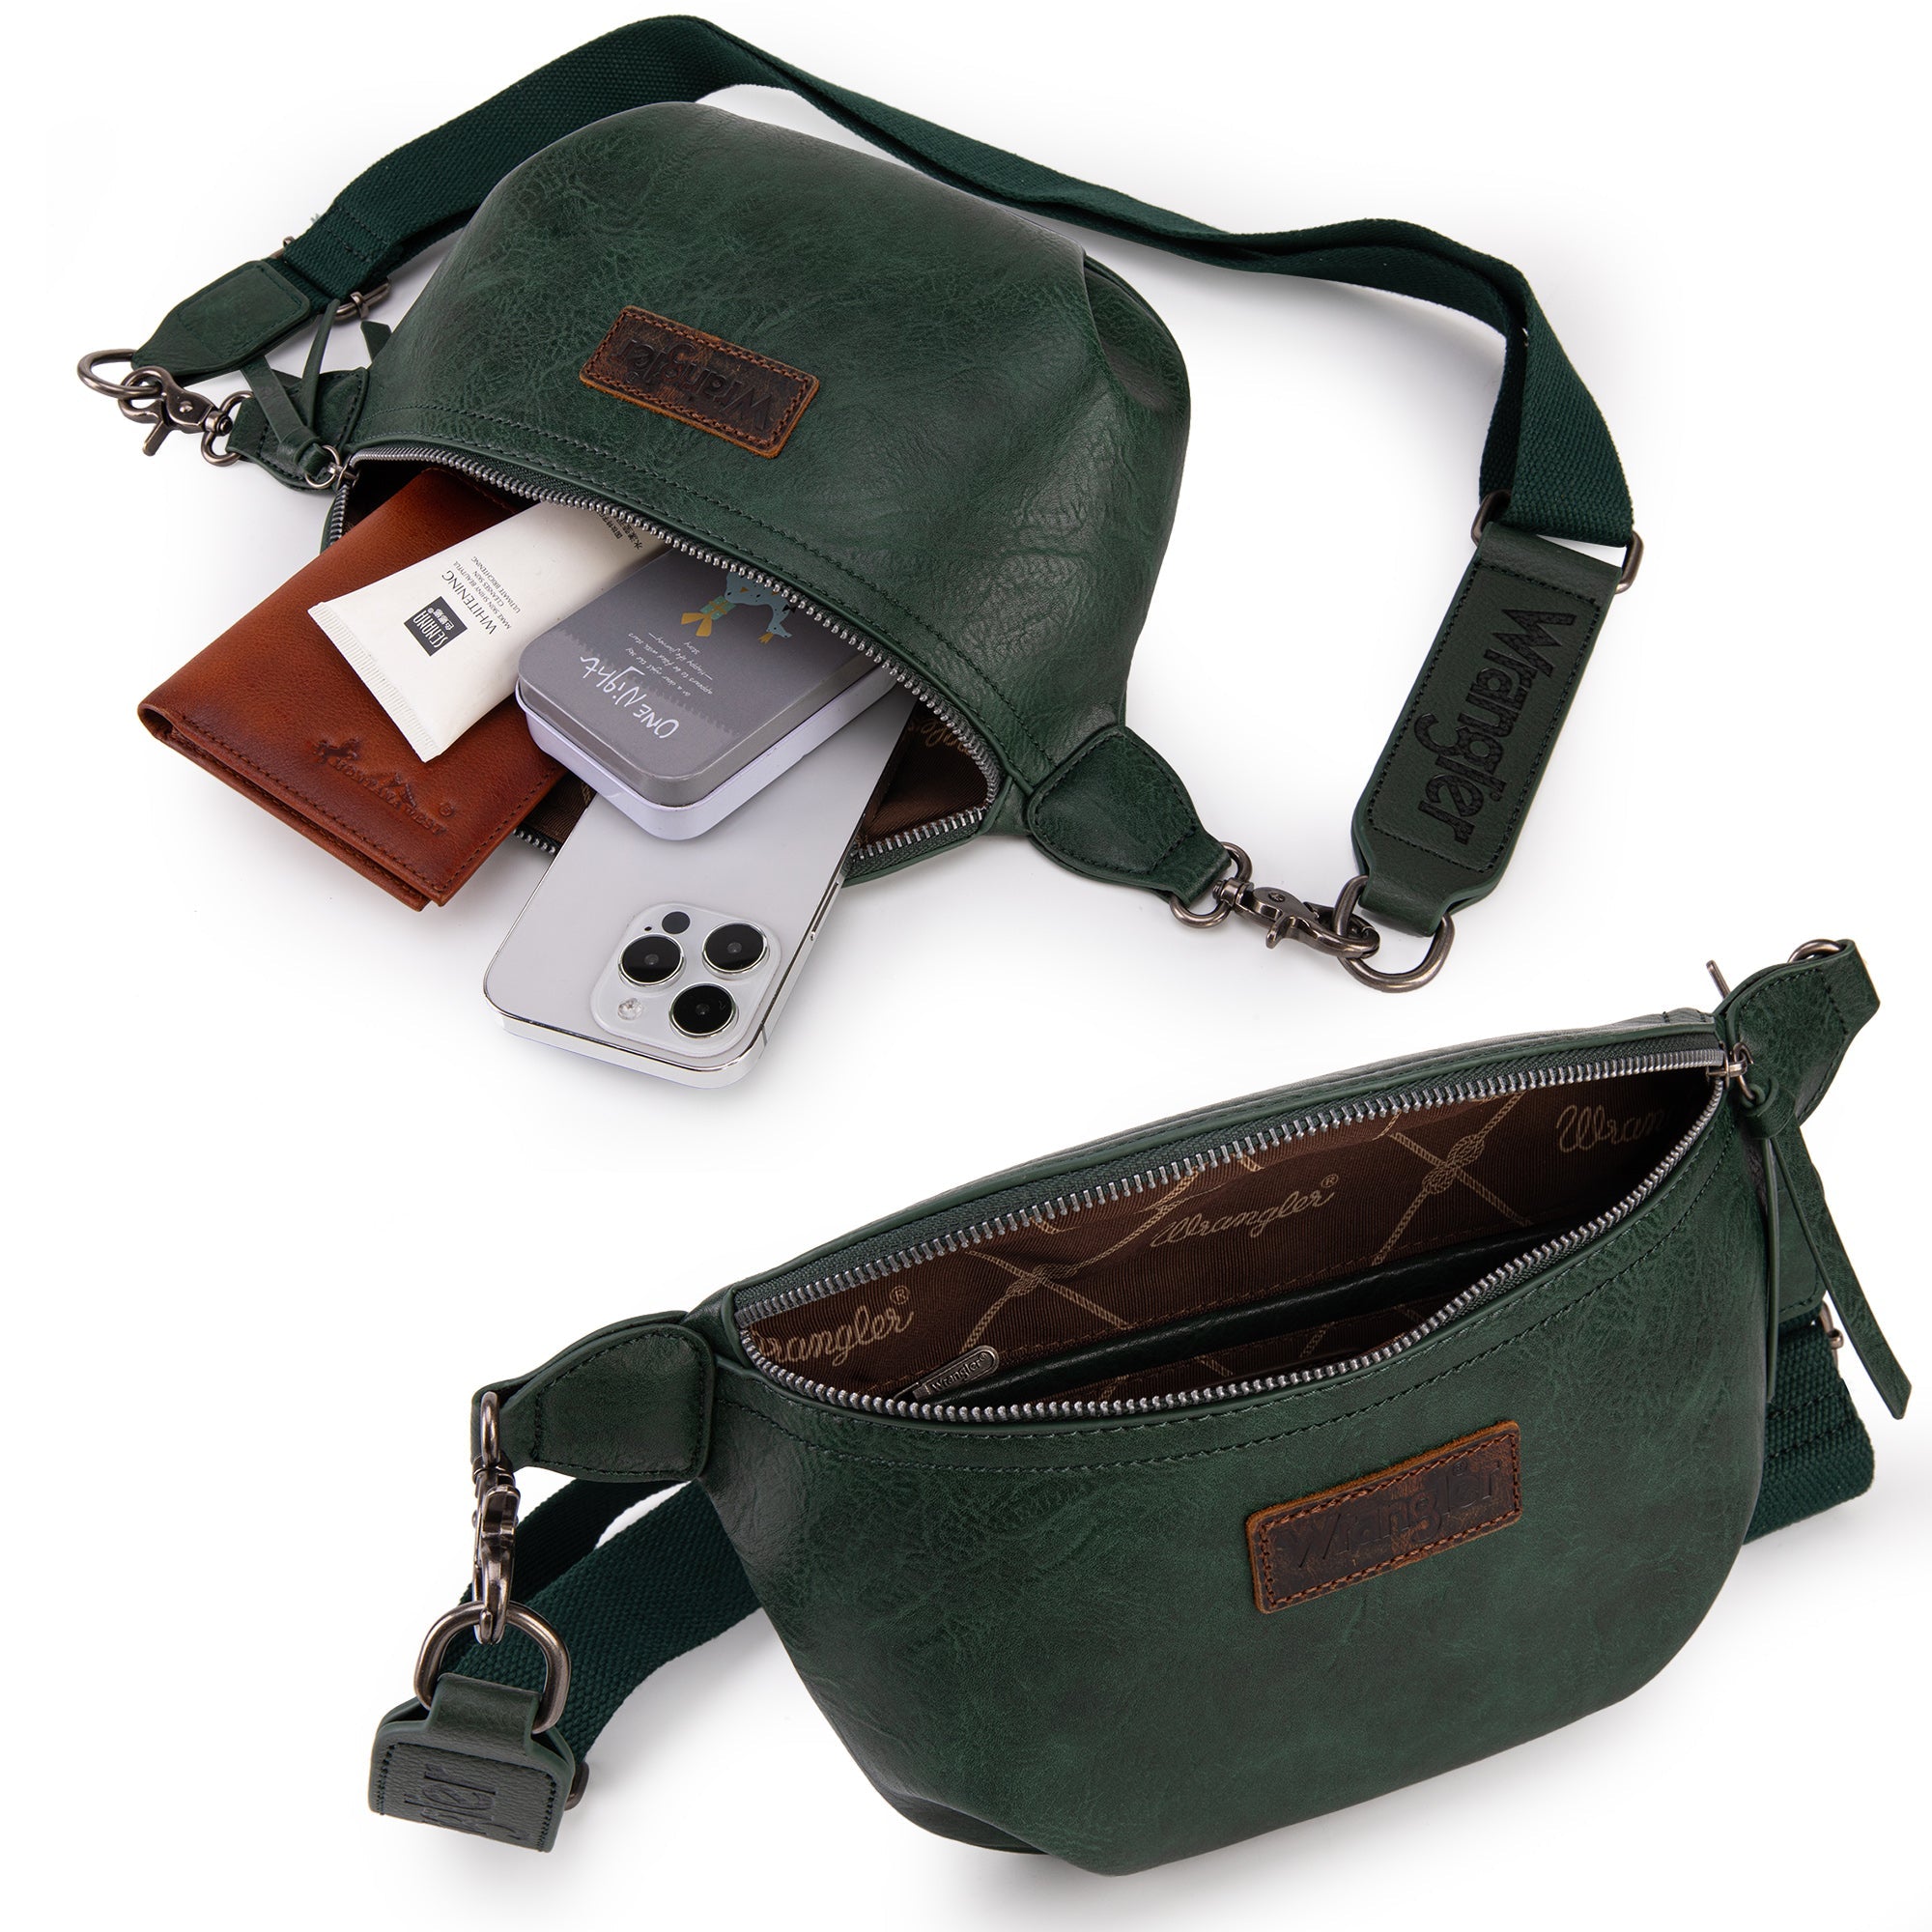 WG82-194  Wrangler Fanny Pack Belt Bag Sling Bag - Green